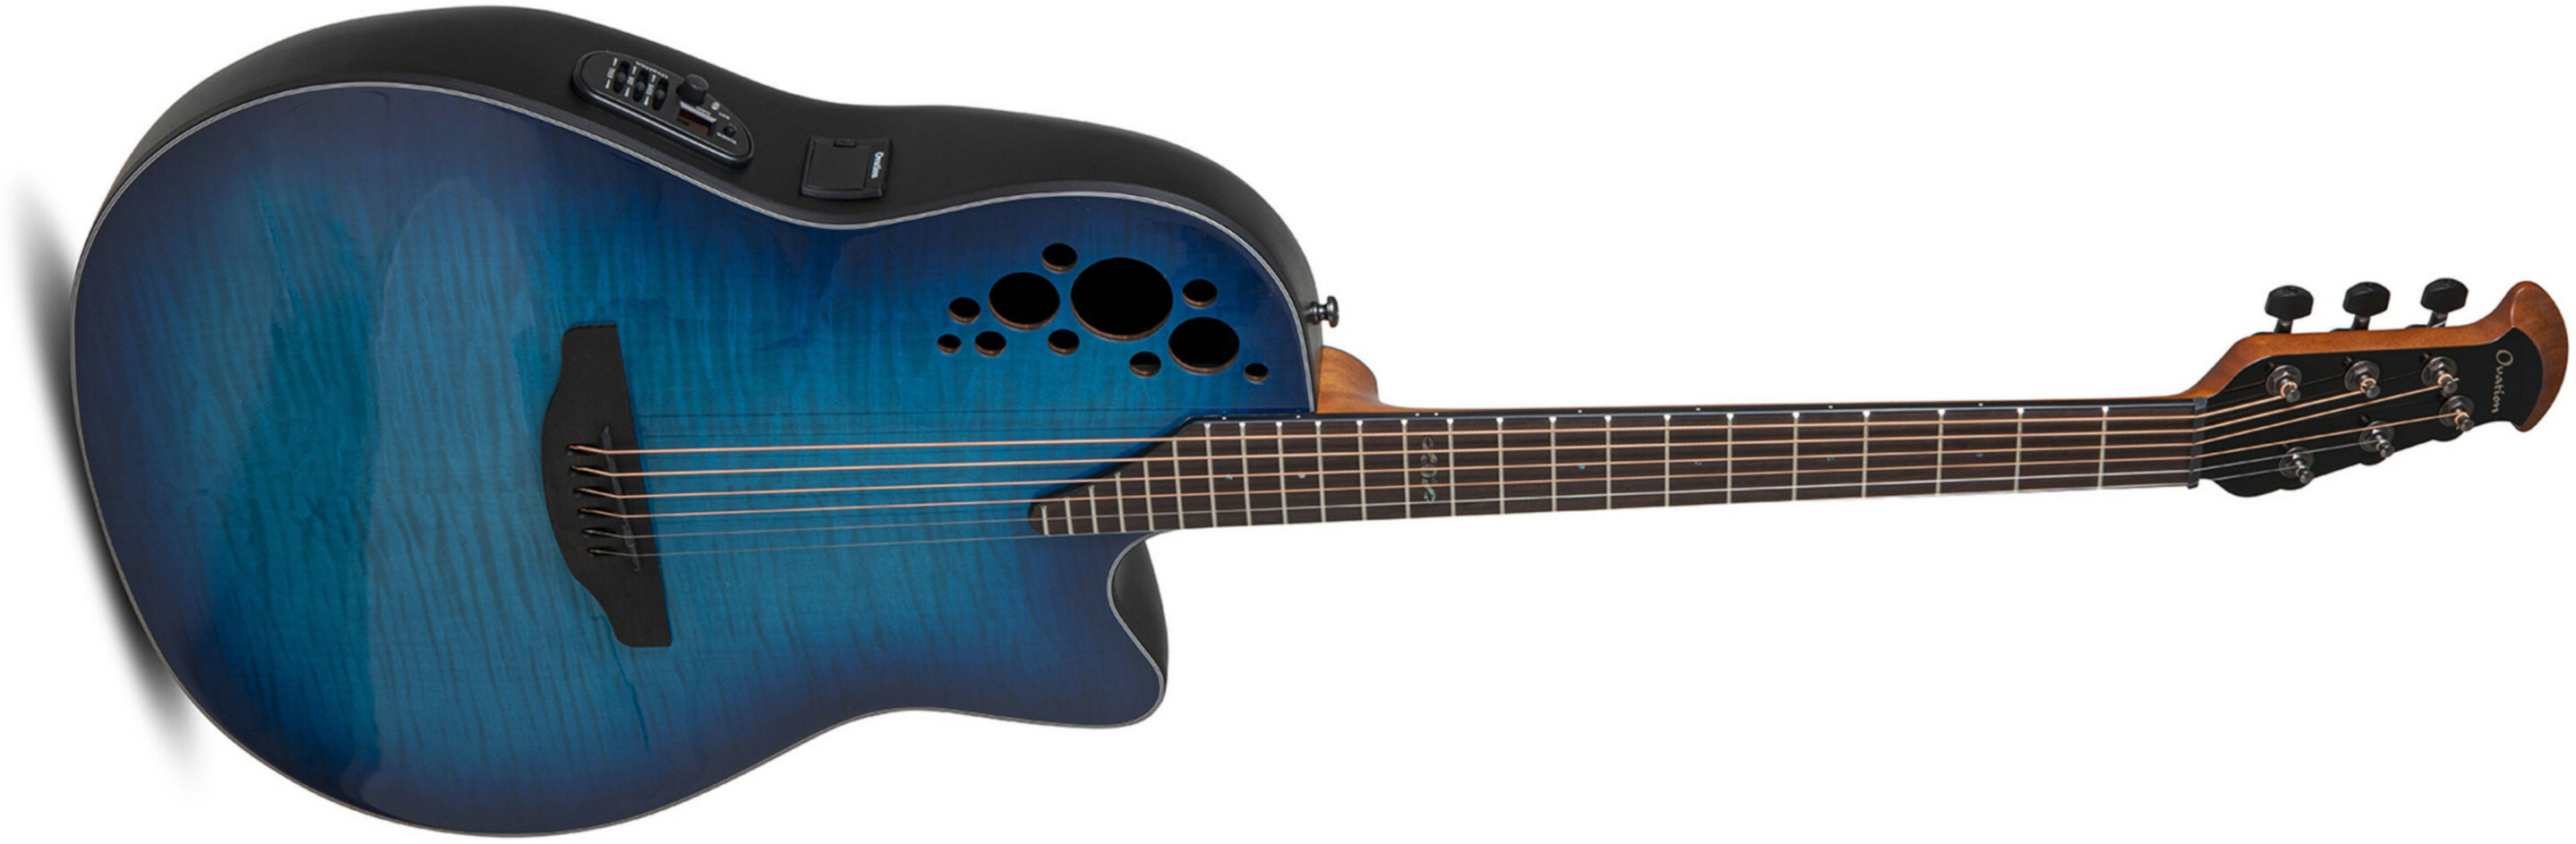 Ovation Ce44p-blfl-g Celebrity Elite Plus Mid Depth Cw Erable Lyrachord Rw - Blue Flamed Maple - Guitare Electro Acoustique - Main picture